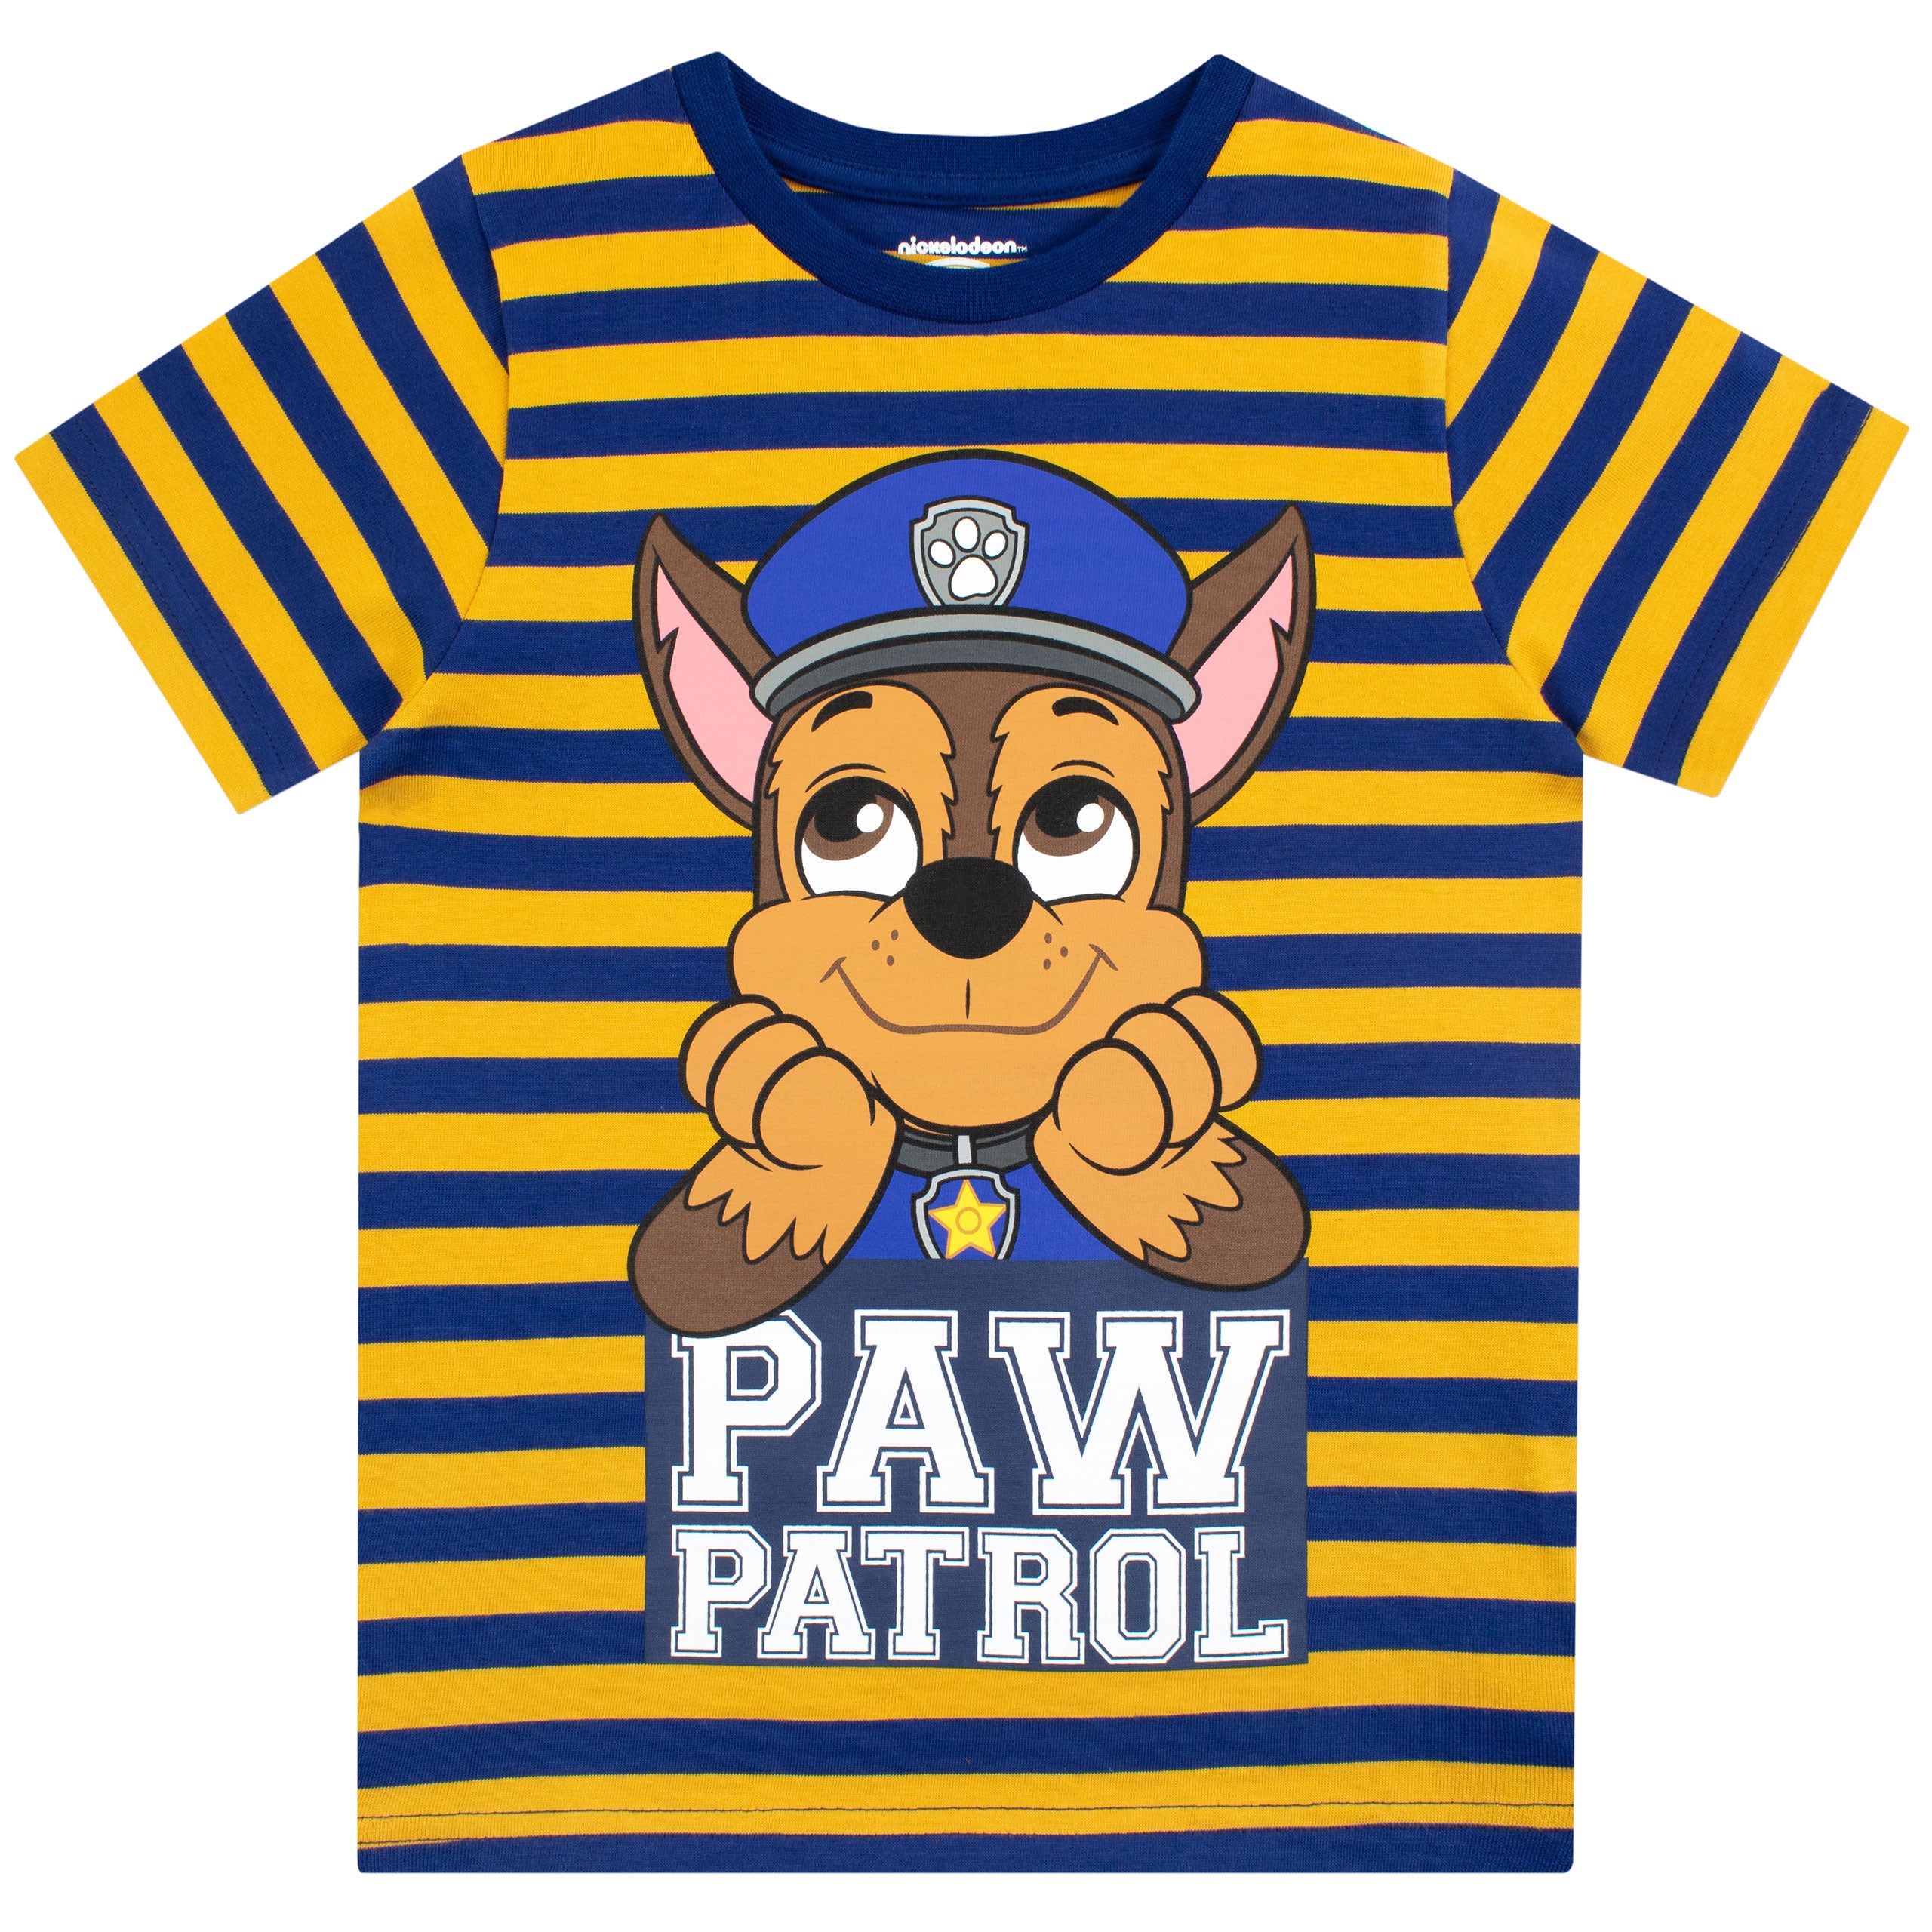 Populær I særdeleshed notifikation Kids Paw Patrol T-Shirt |Kids | Official Character.com Merchandise